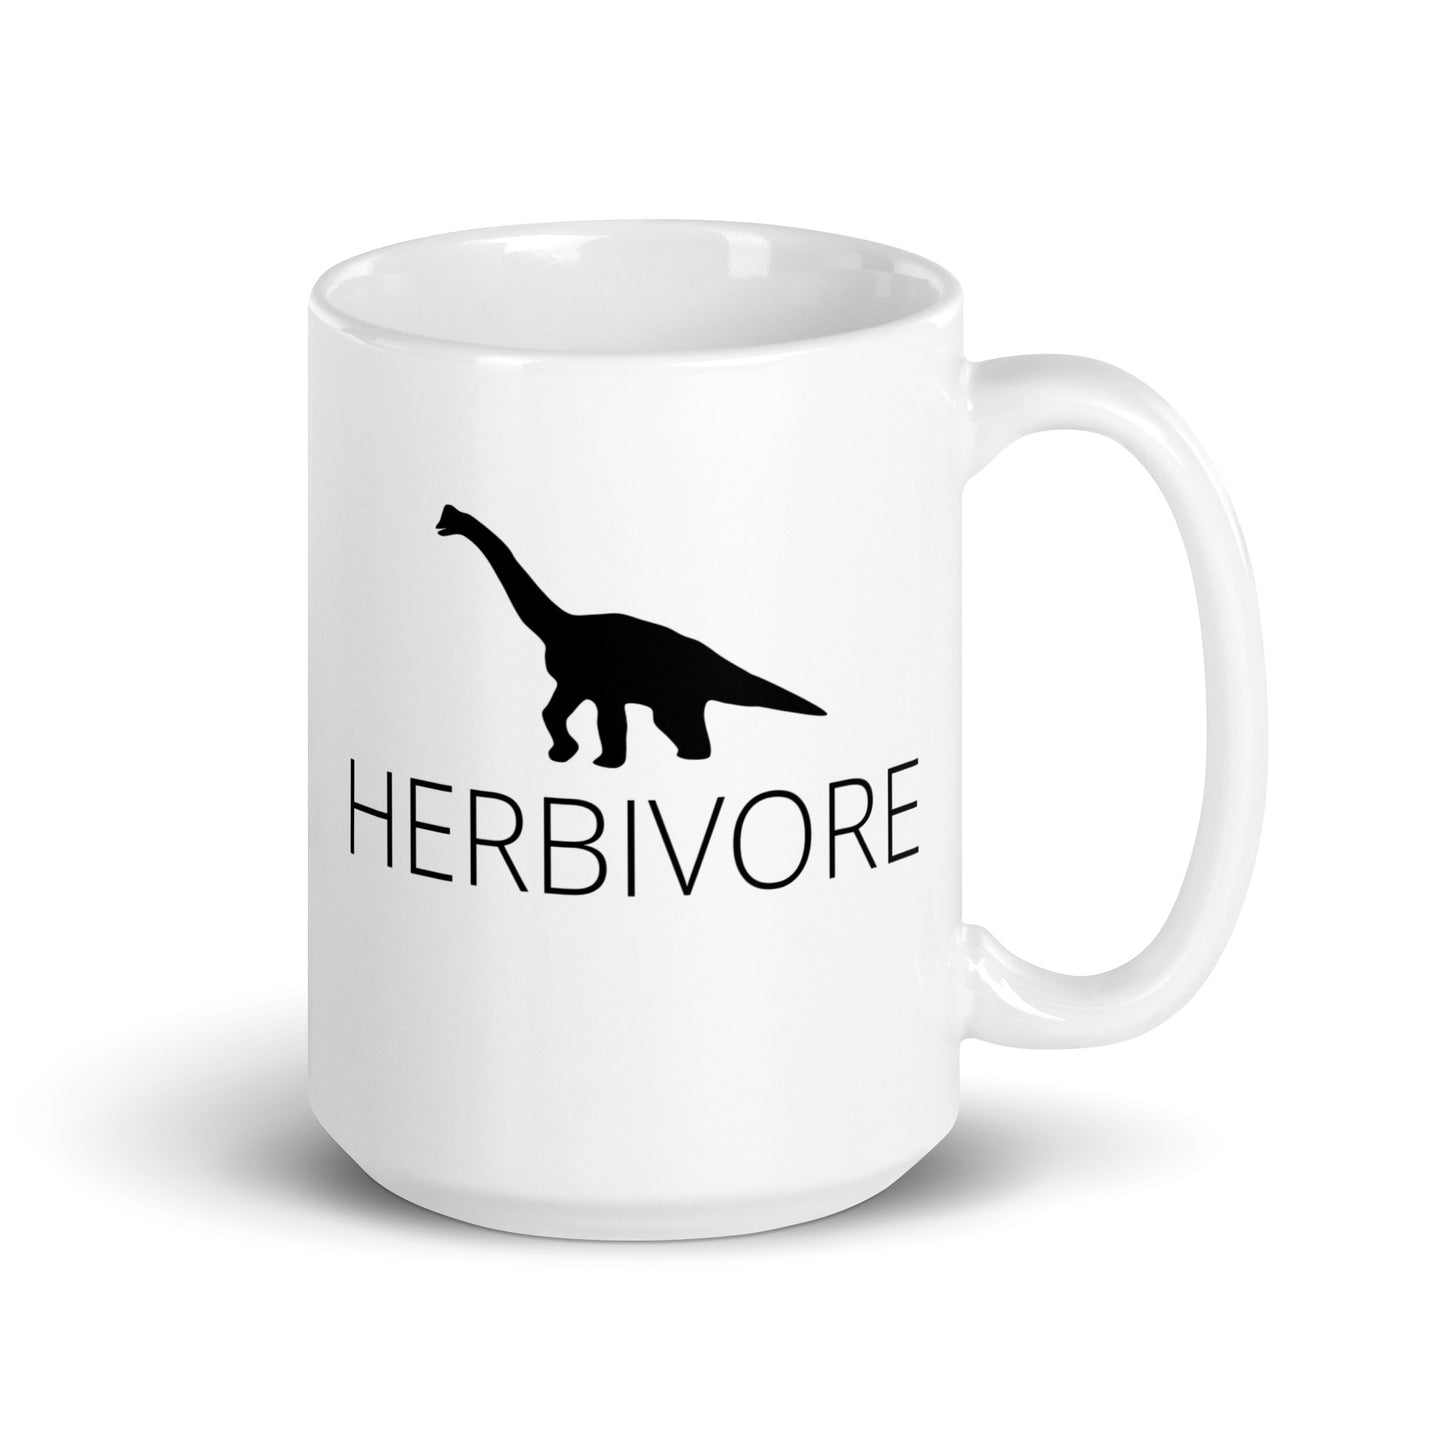 Herbivore- Vegan Coffee Mug